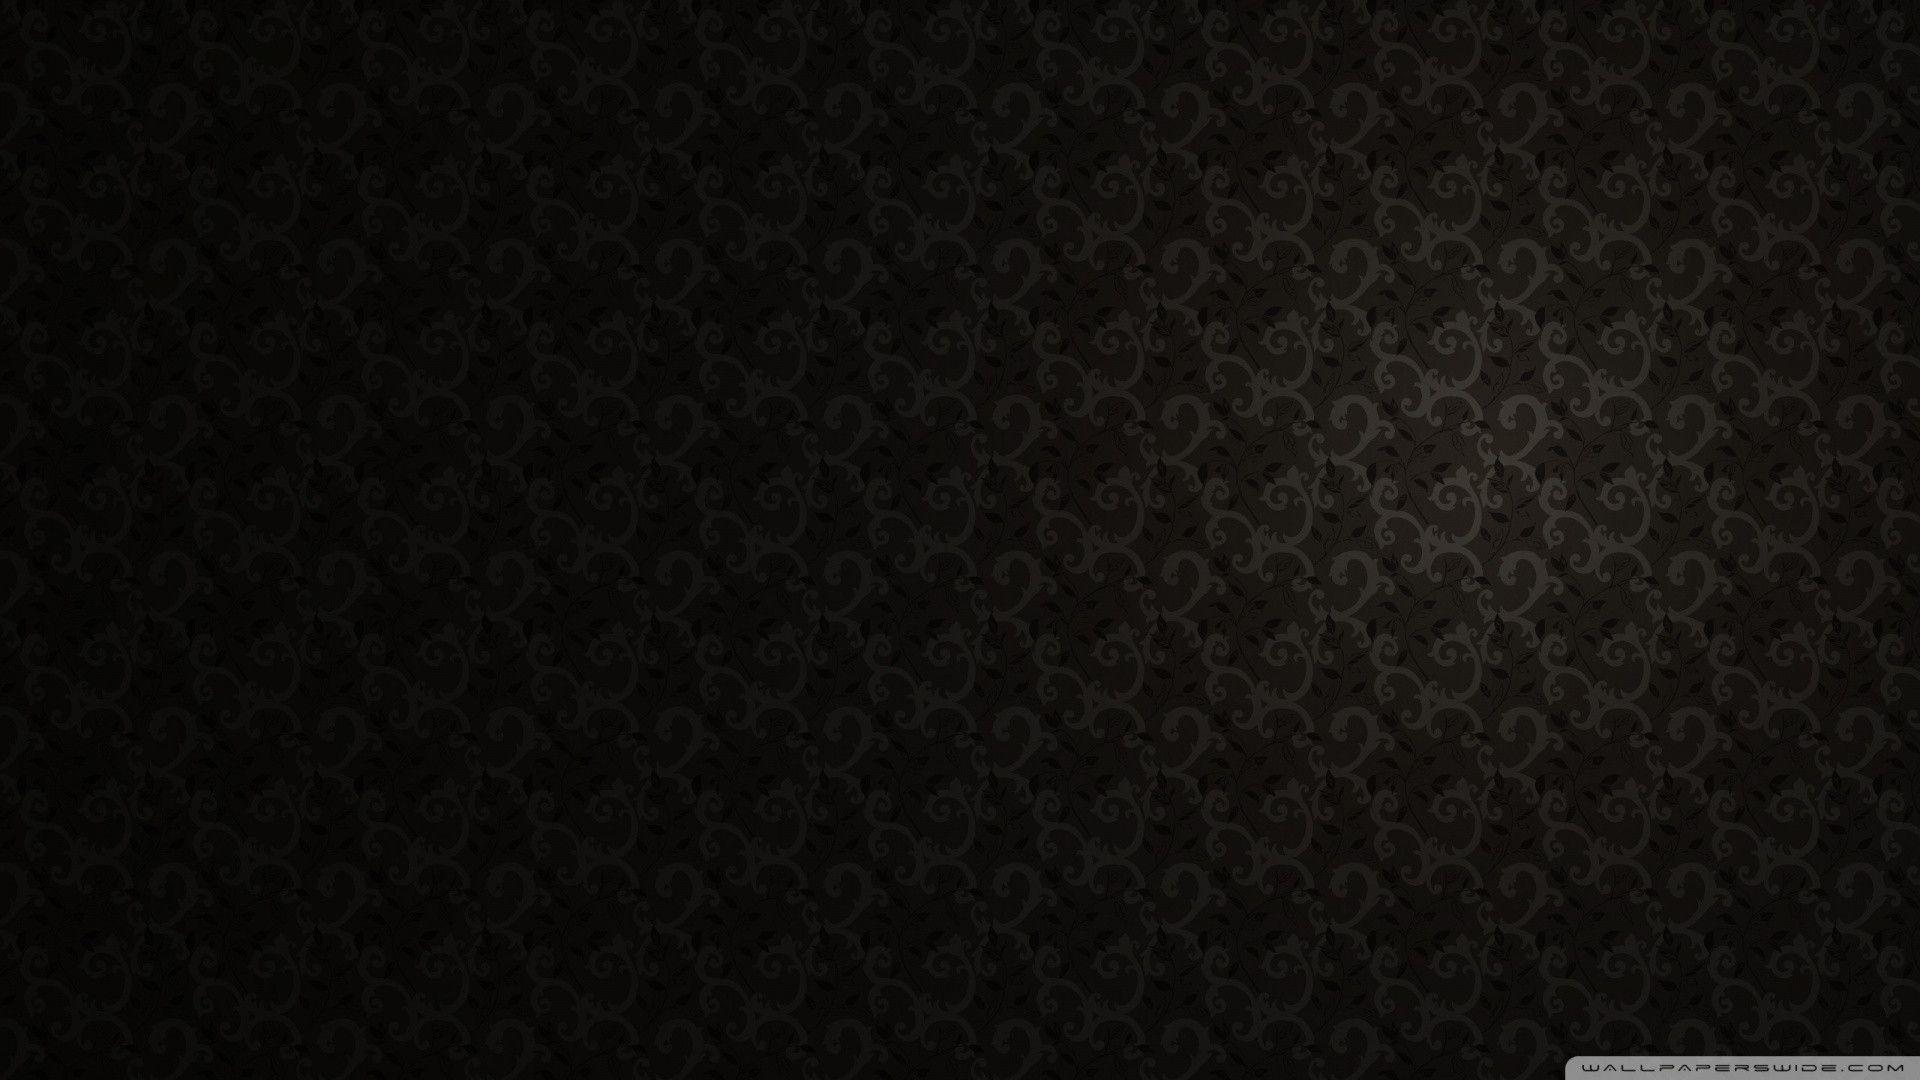 Wallpaper For > Elegant Wallpaper Pattern Black And White